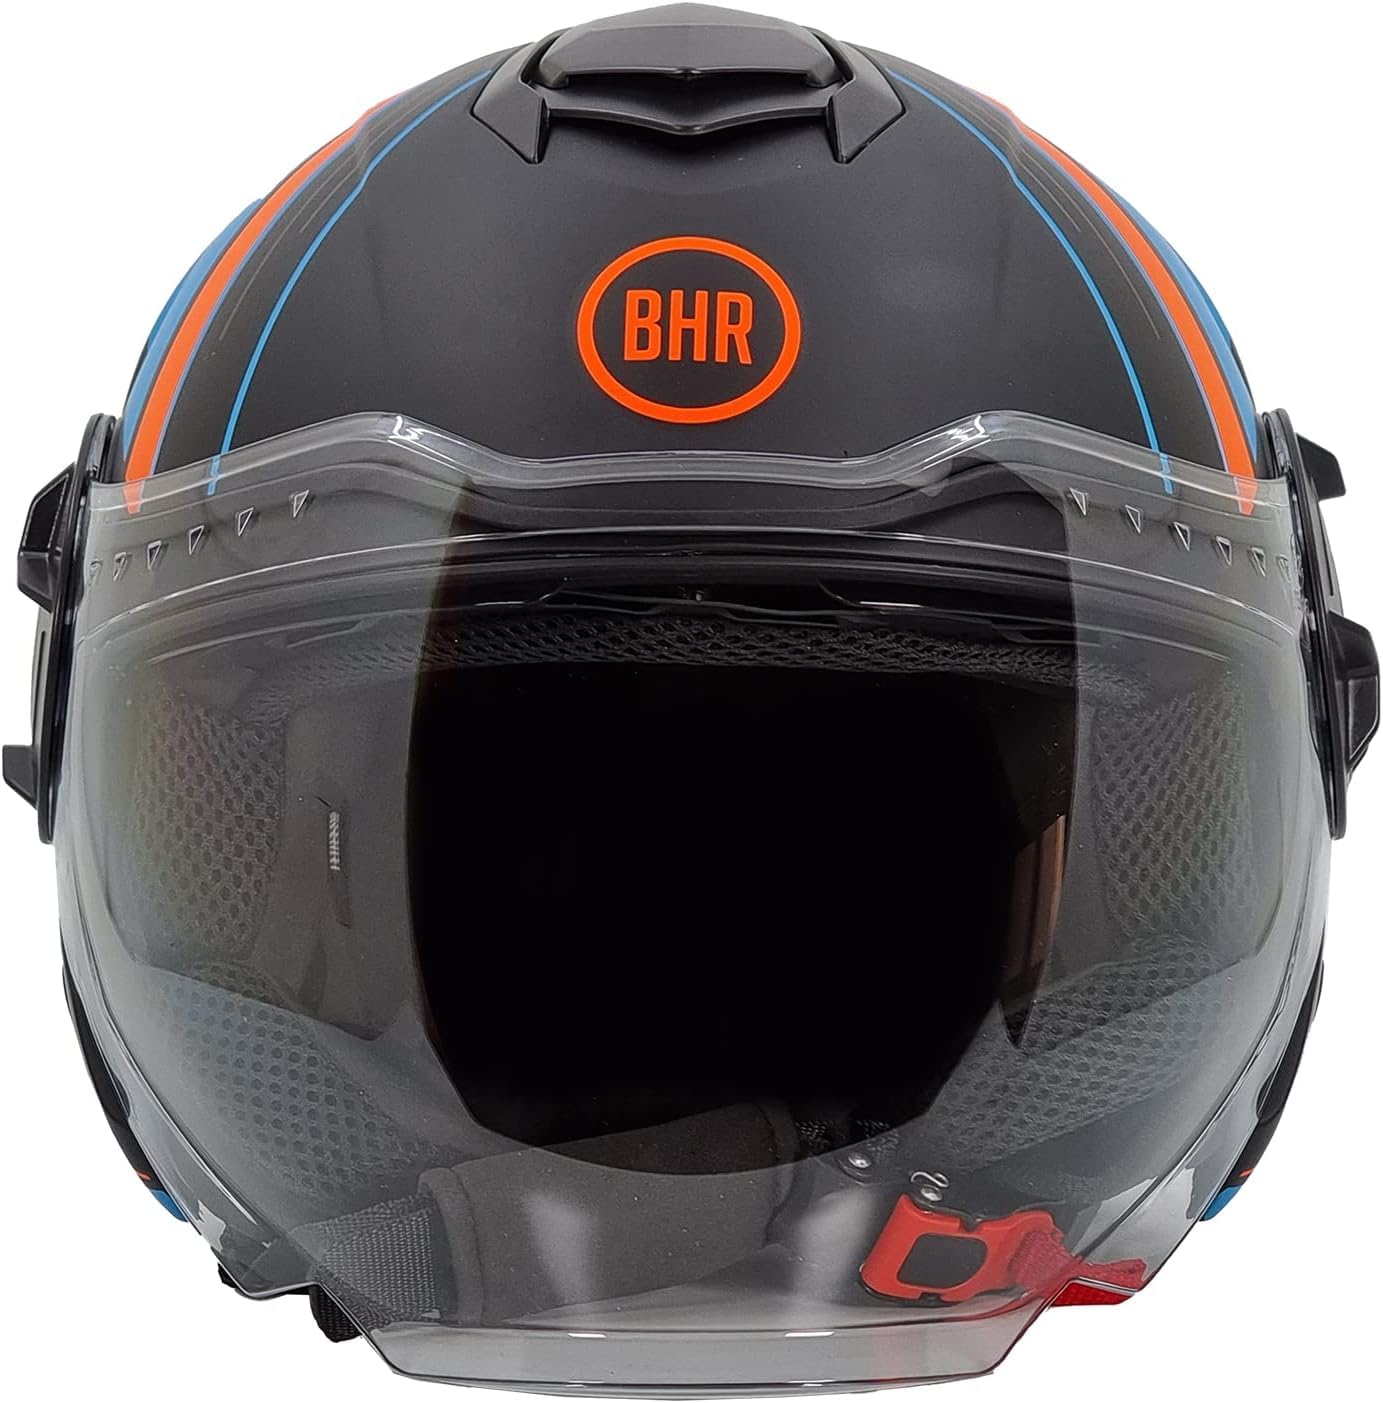 BHR Jet Helm Double Visor 830 Flash, Scooter Helm mit ECE 22.06 Zulassung, Leichter & komfortabler Jet Helm mit innenliegender Sonnenblende, Cool Black (Matt), M